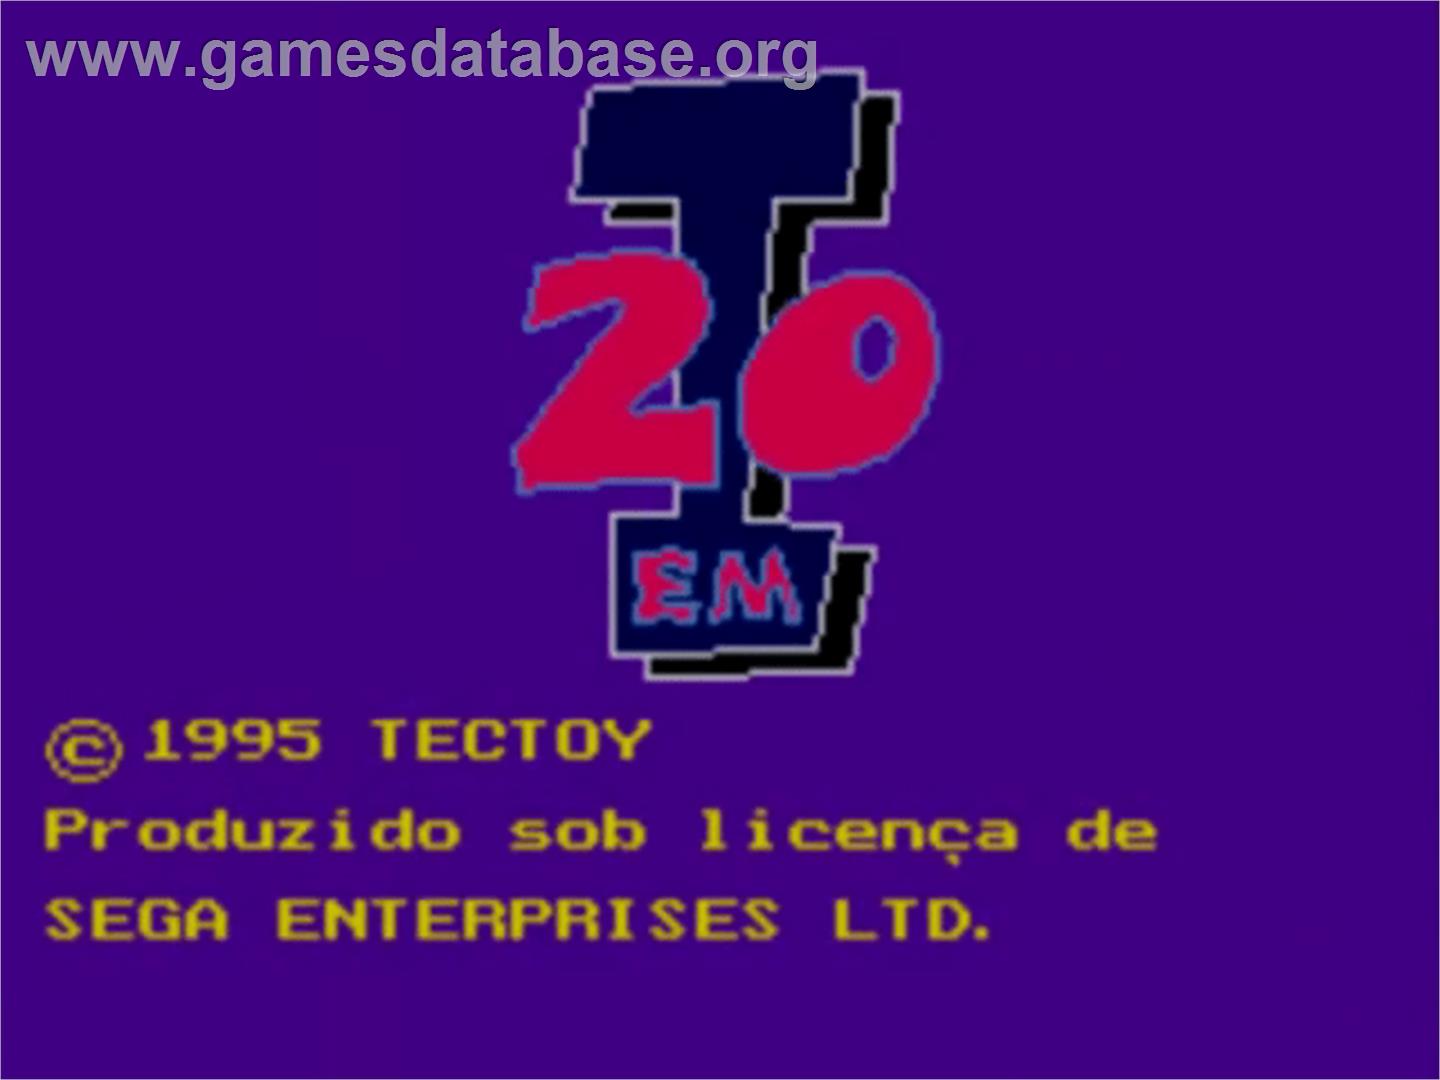 20 em 1 - Sega Master System - Artwork - Title Screen